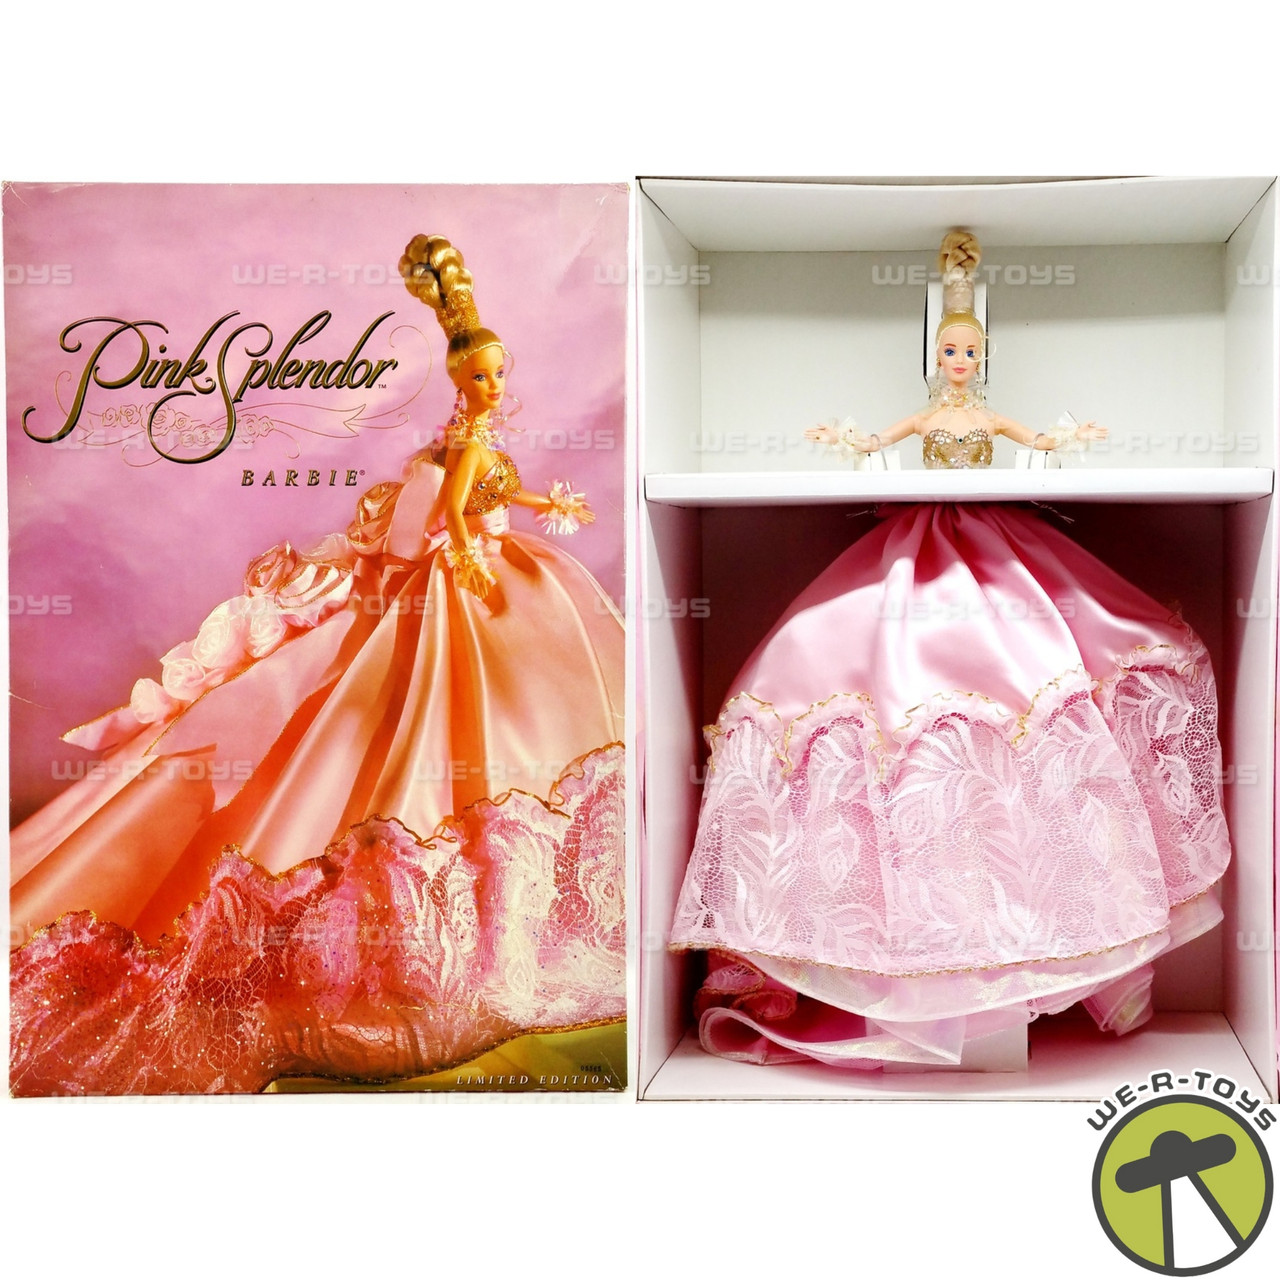 Barbie Pink Splendor Doll Limited Edition 1996 Mattel 16091